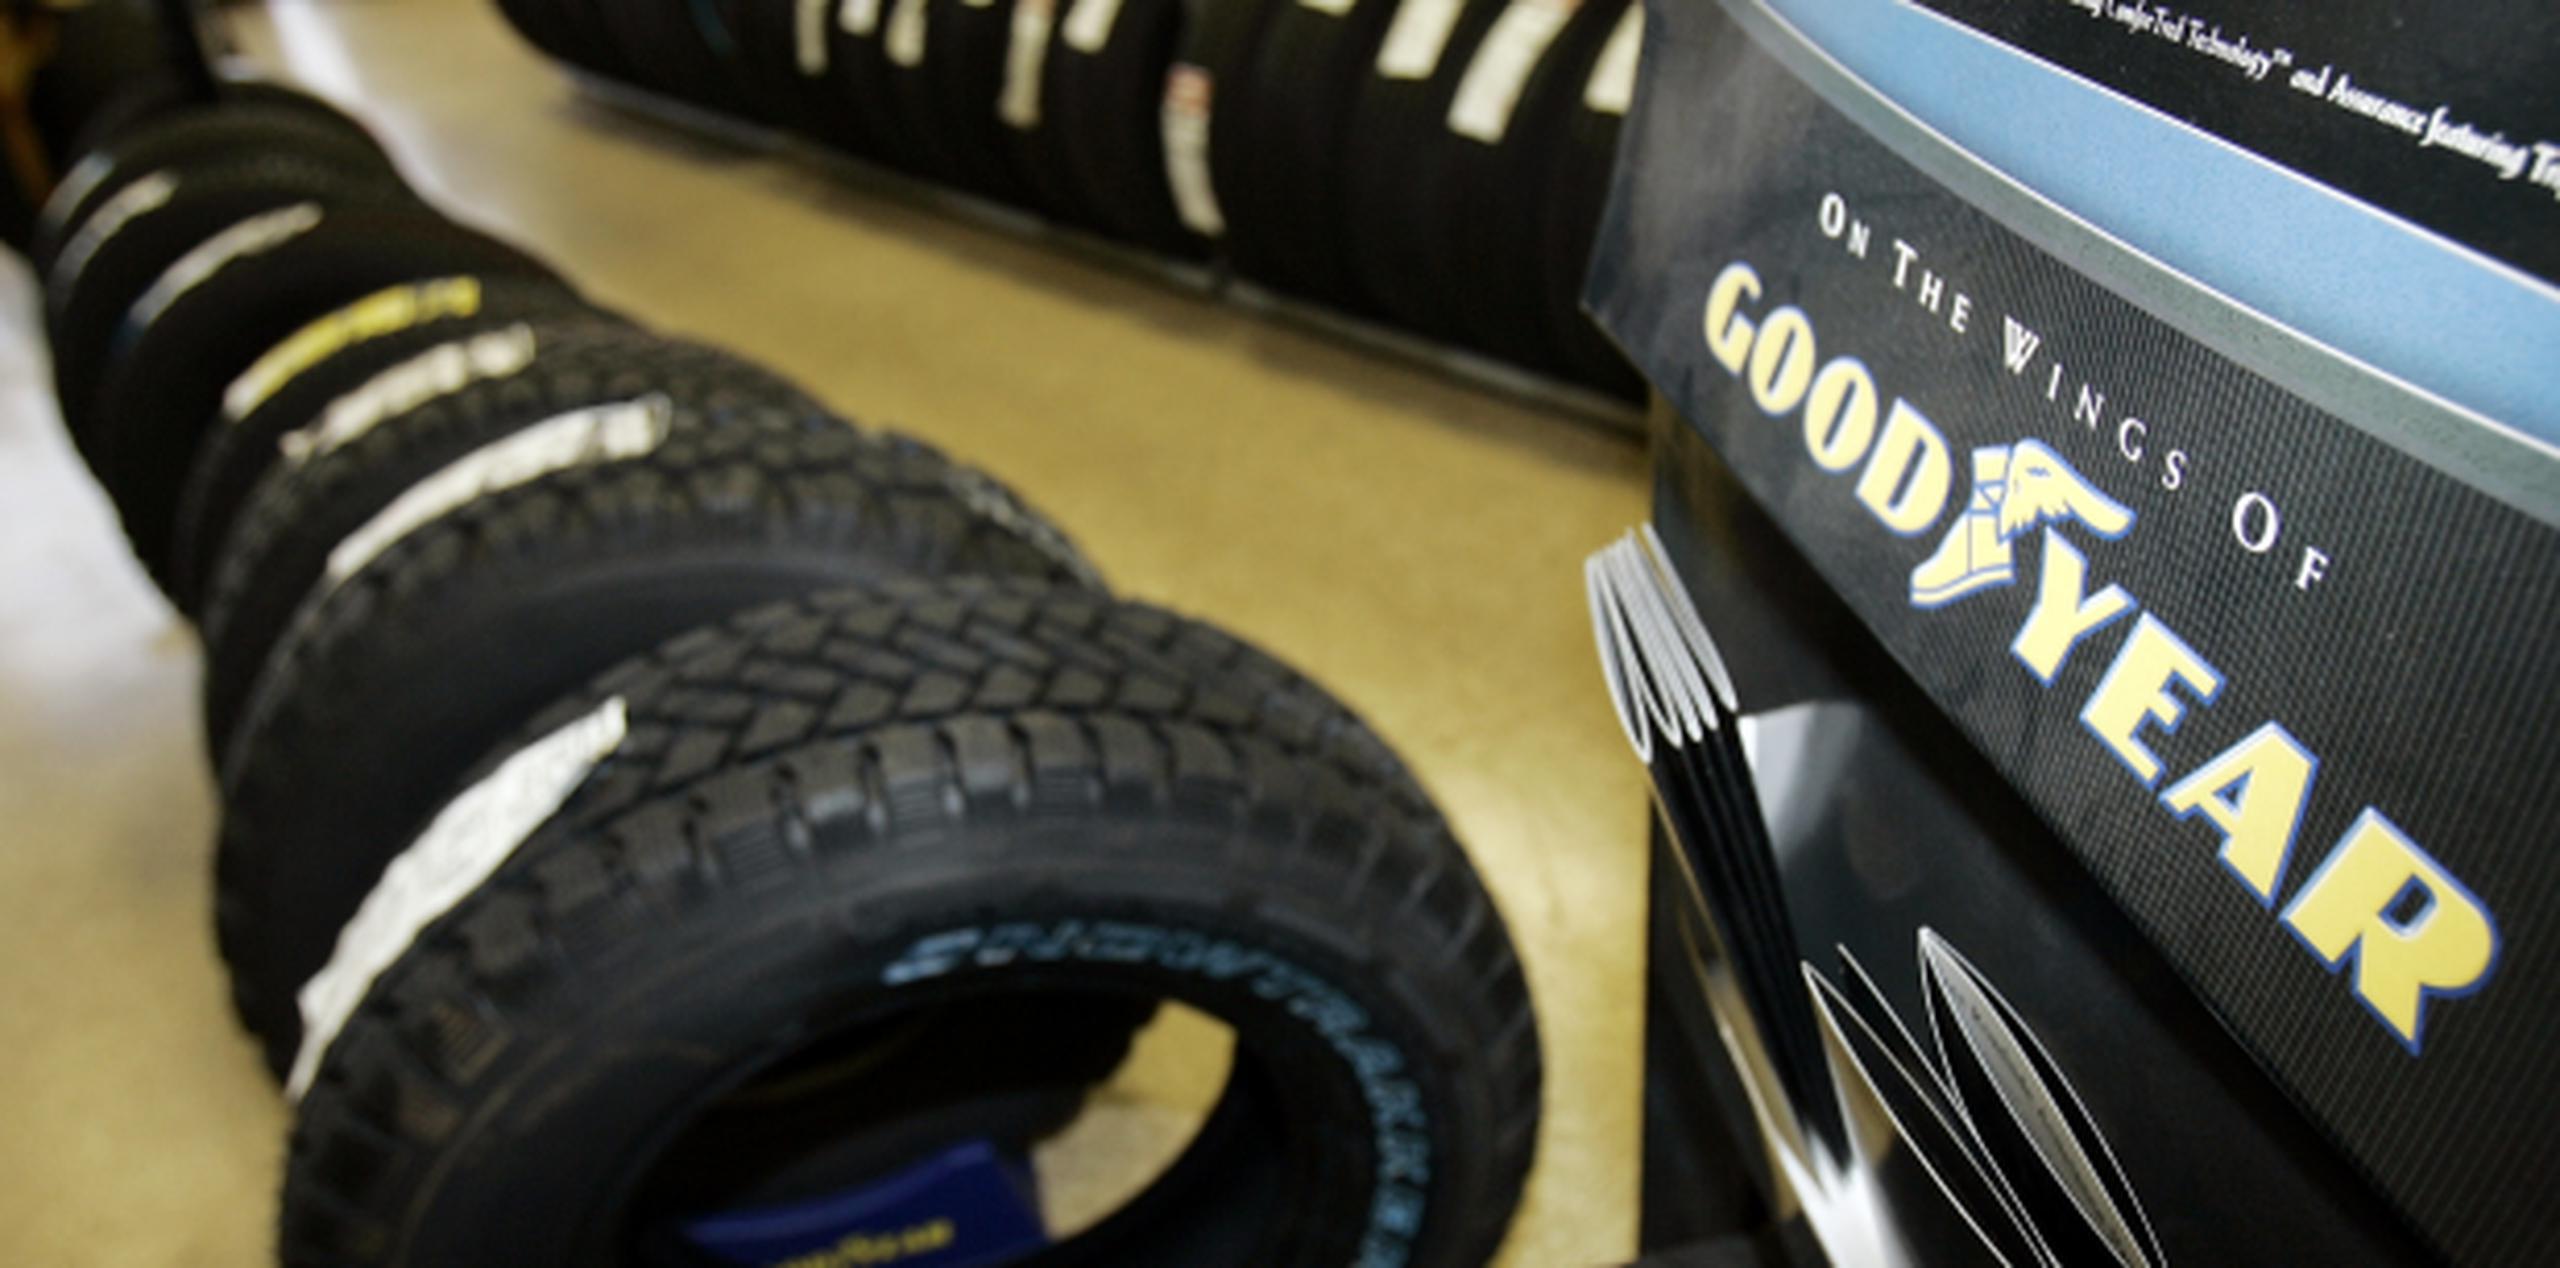 La pesquisa abarca unos 40,000 neumáticos producidos desde 1996 hasta el 2003. (Archivo)